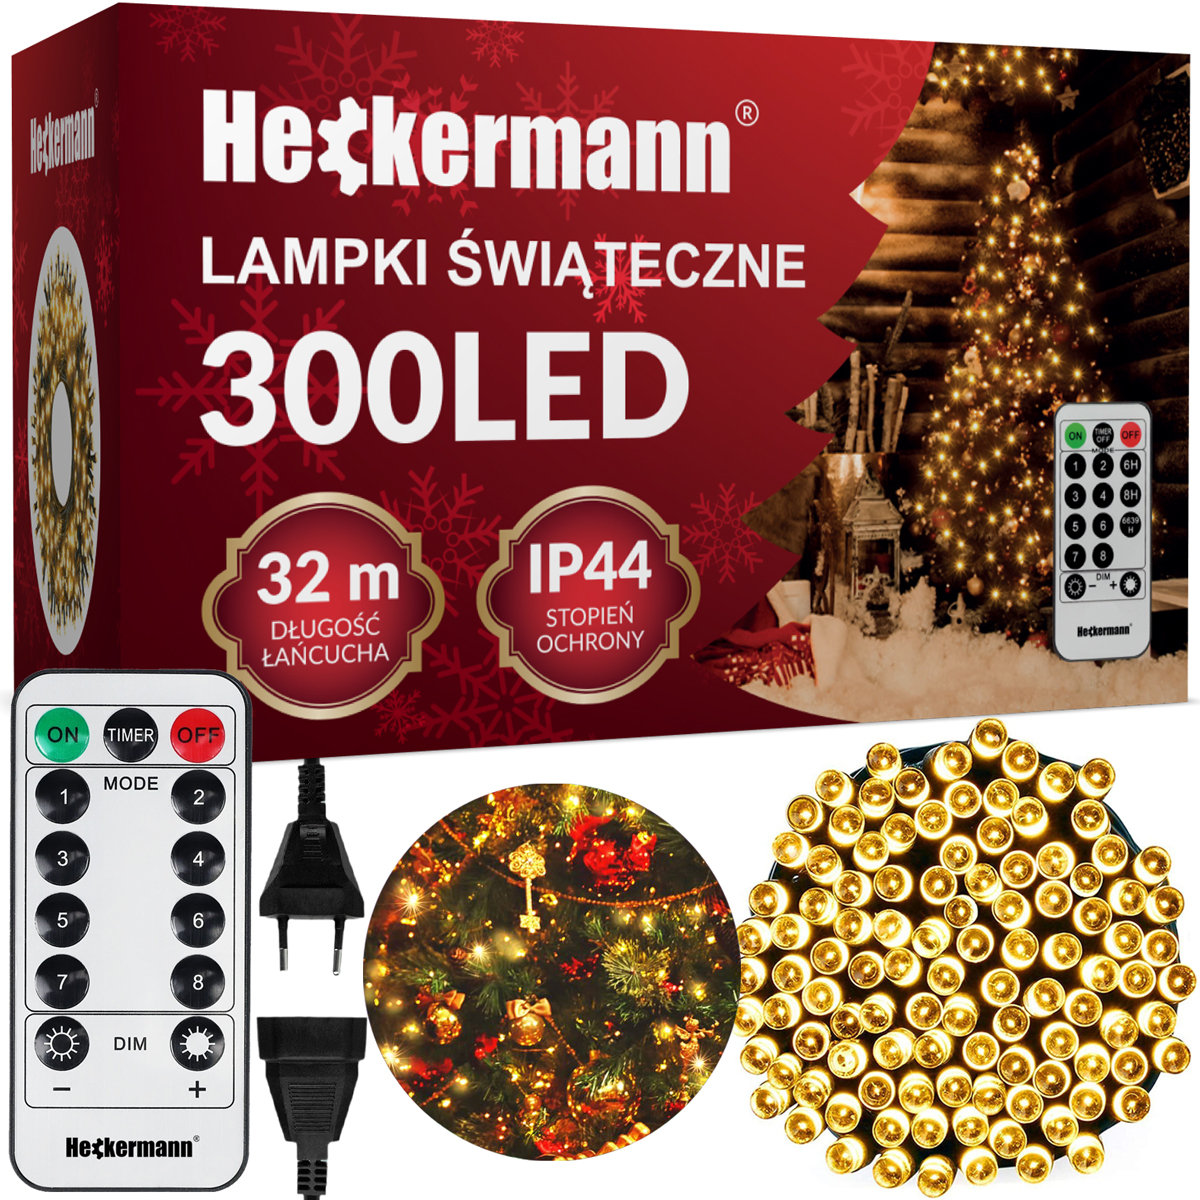 Zdjęcia - Girlanda Heckermann Kurtyna świetlna  CL-LHL-30 300LED Warm Lampki świąteczne 